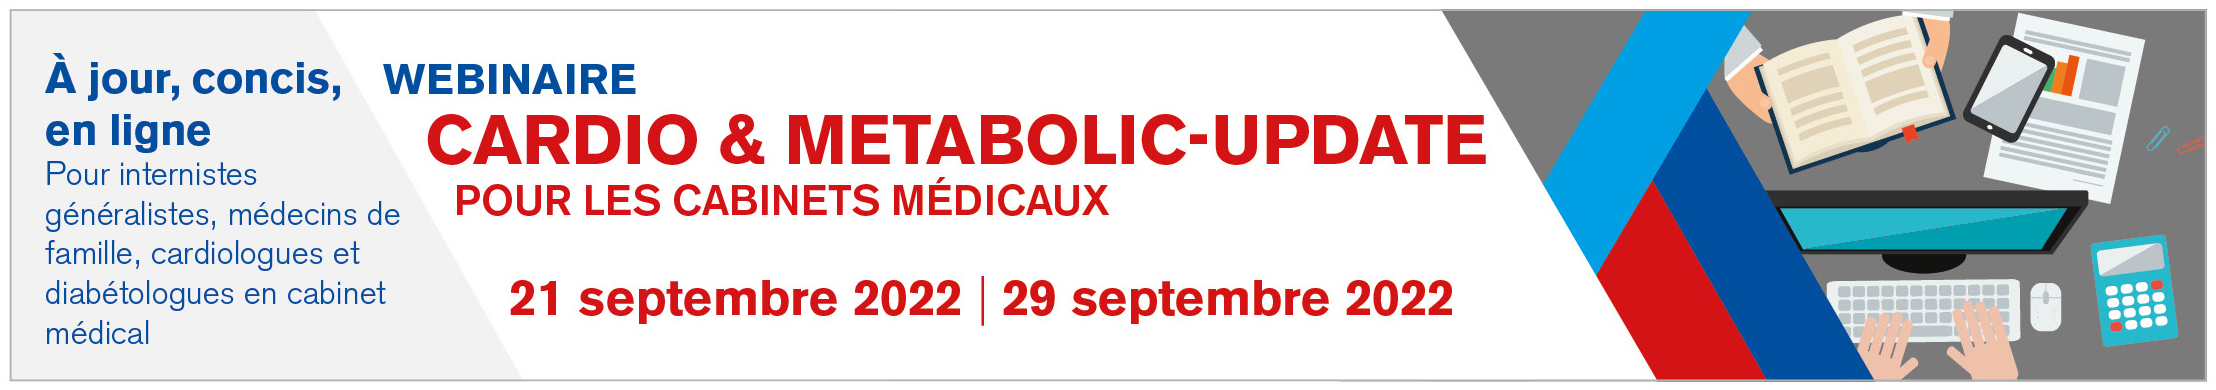 Cardio & Metabolic-Update pour les cabinets médicaux - coeur et lipides 2022